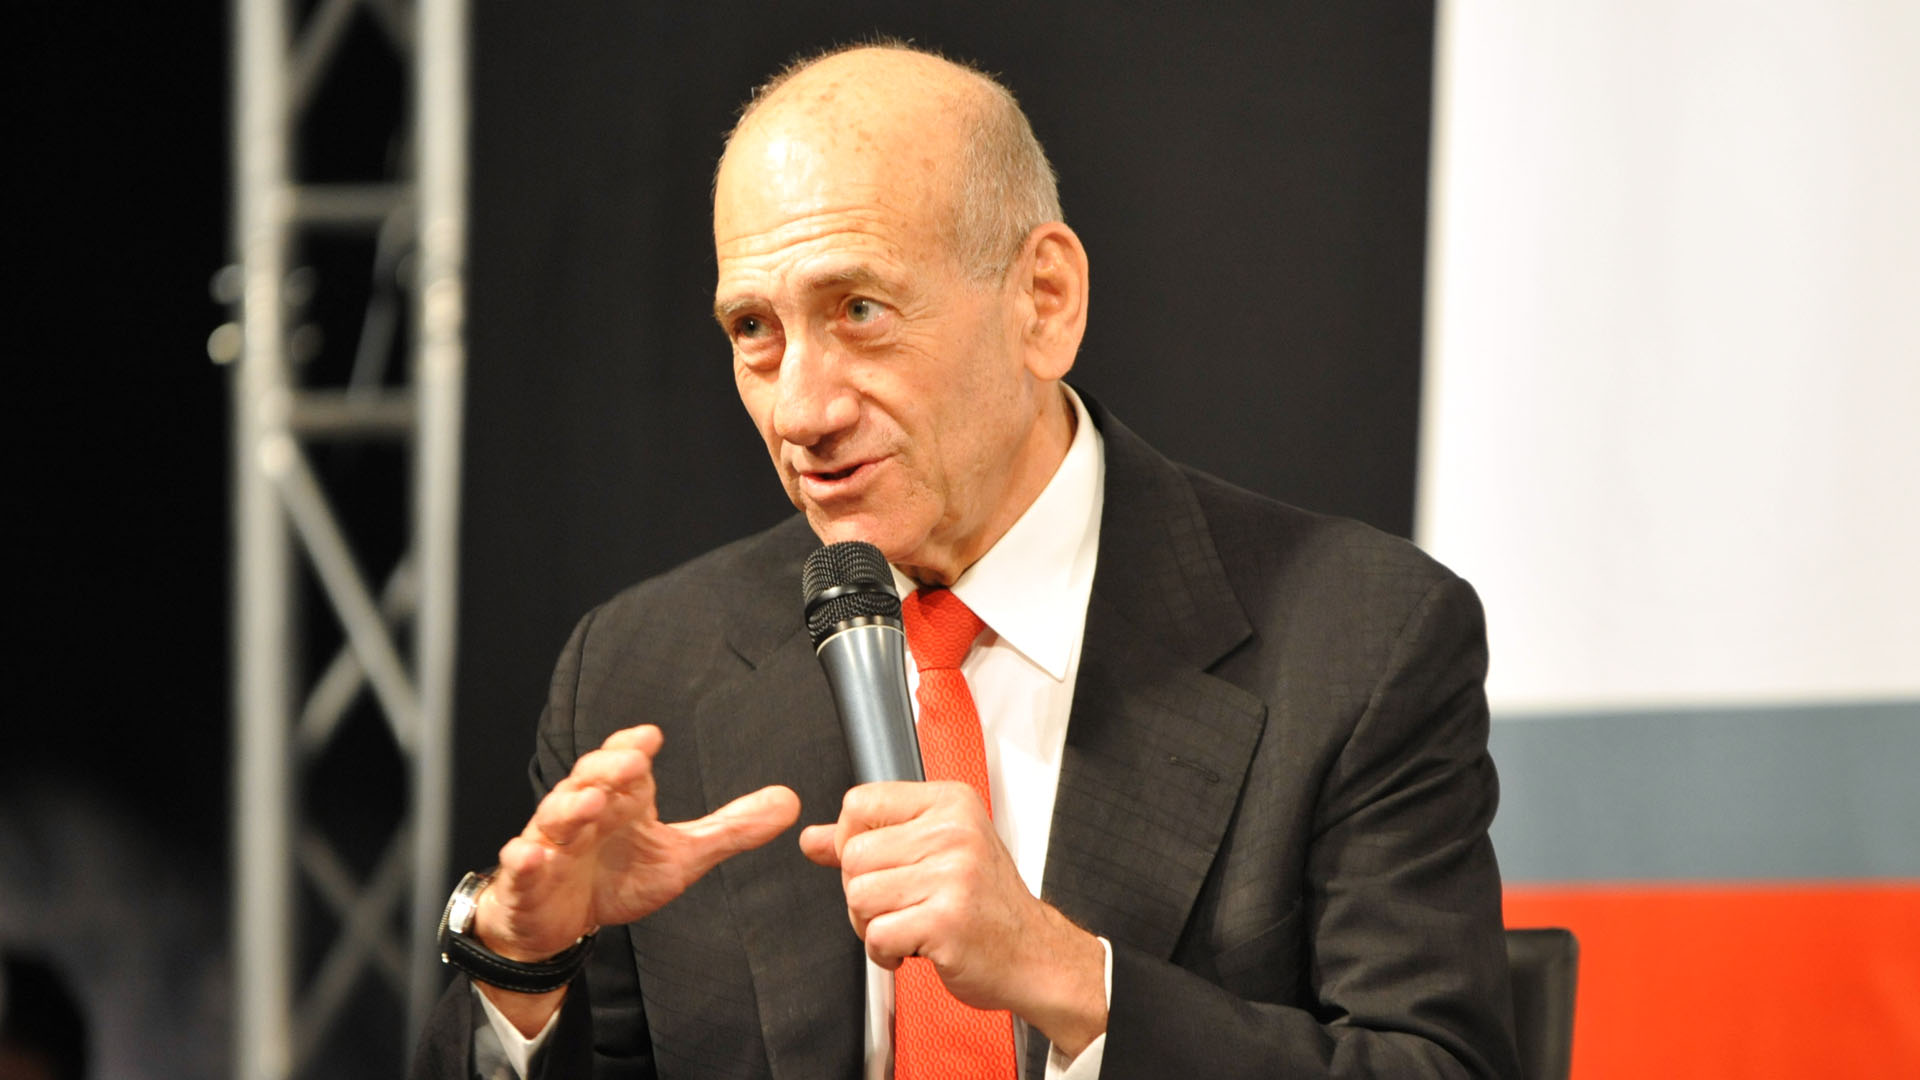 Dass der frühere Premier Olmert trotz seiner Verdienste um das israelische Volk inhaftiert wurde, zeugt nach Ansicht des Saudis von einer gerechten Justiz